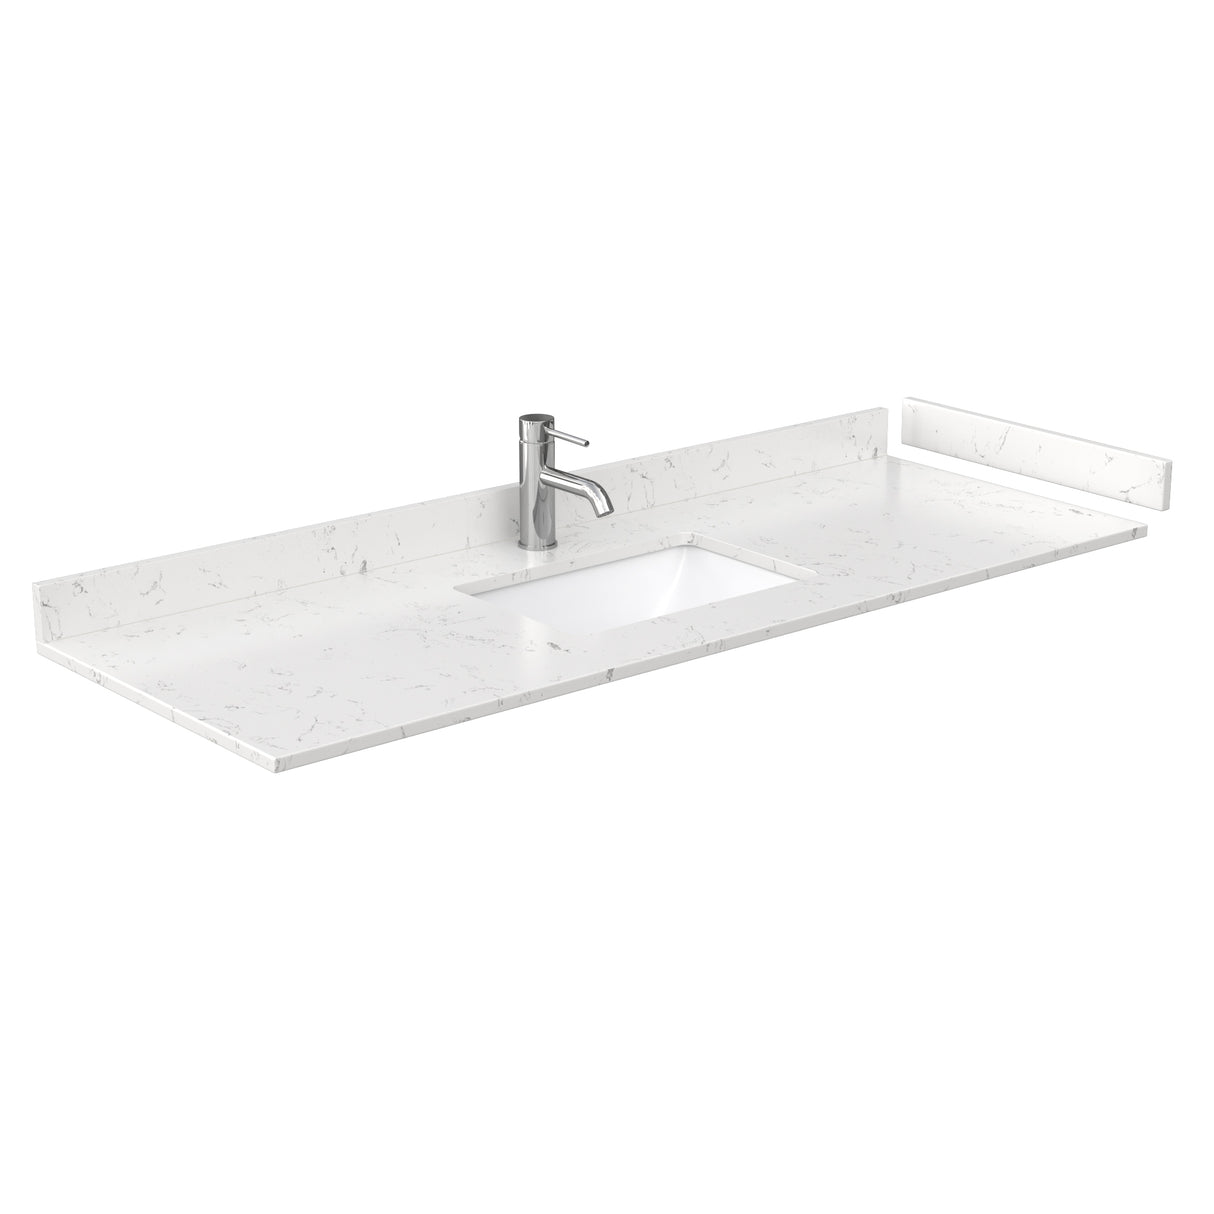 Avery 60 Inch Single Bathroom Vanity in Dark Gray Carrara Cultured Marble Countertop Undermount Square Sink No Mirror